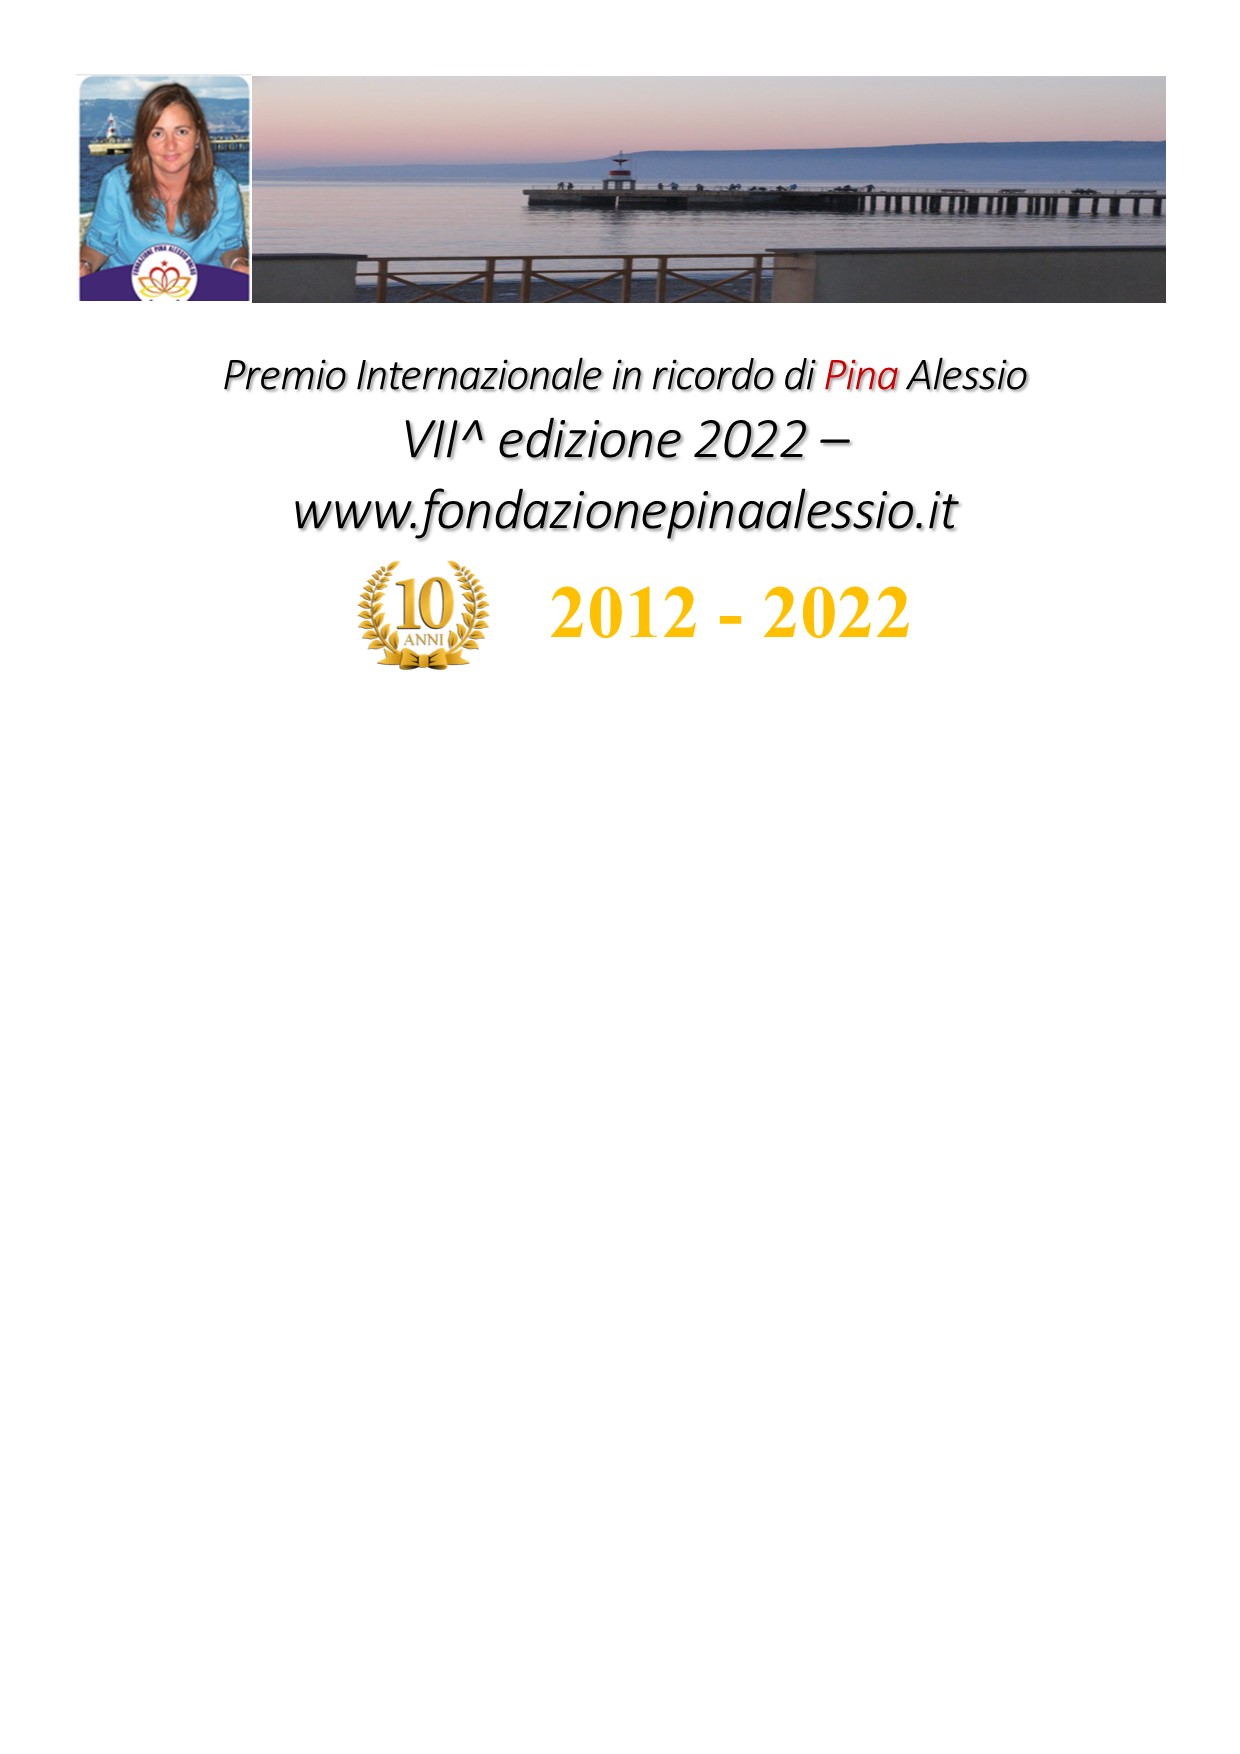 Fondazione Pina Alessio onlus